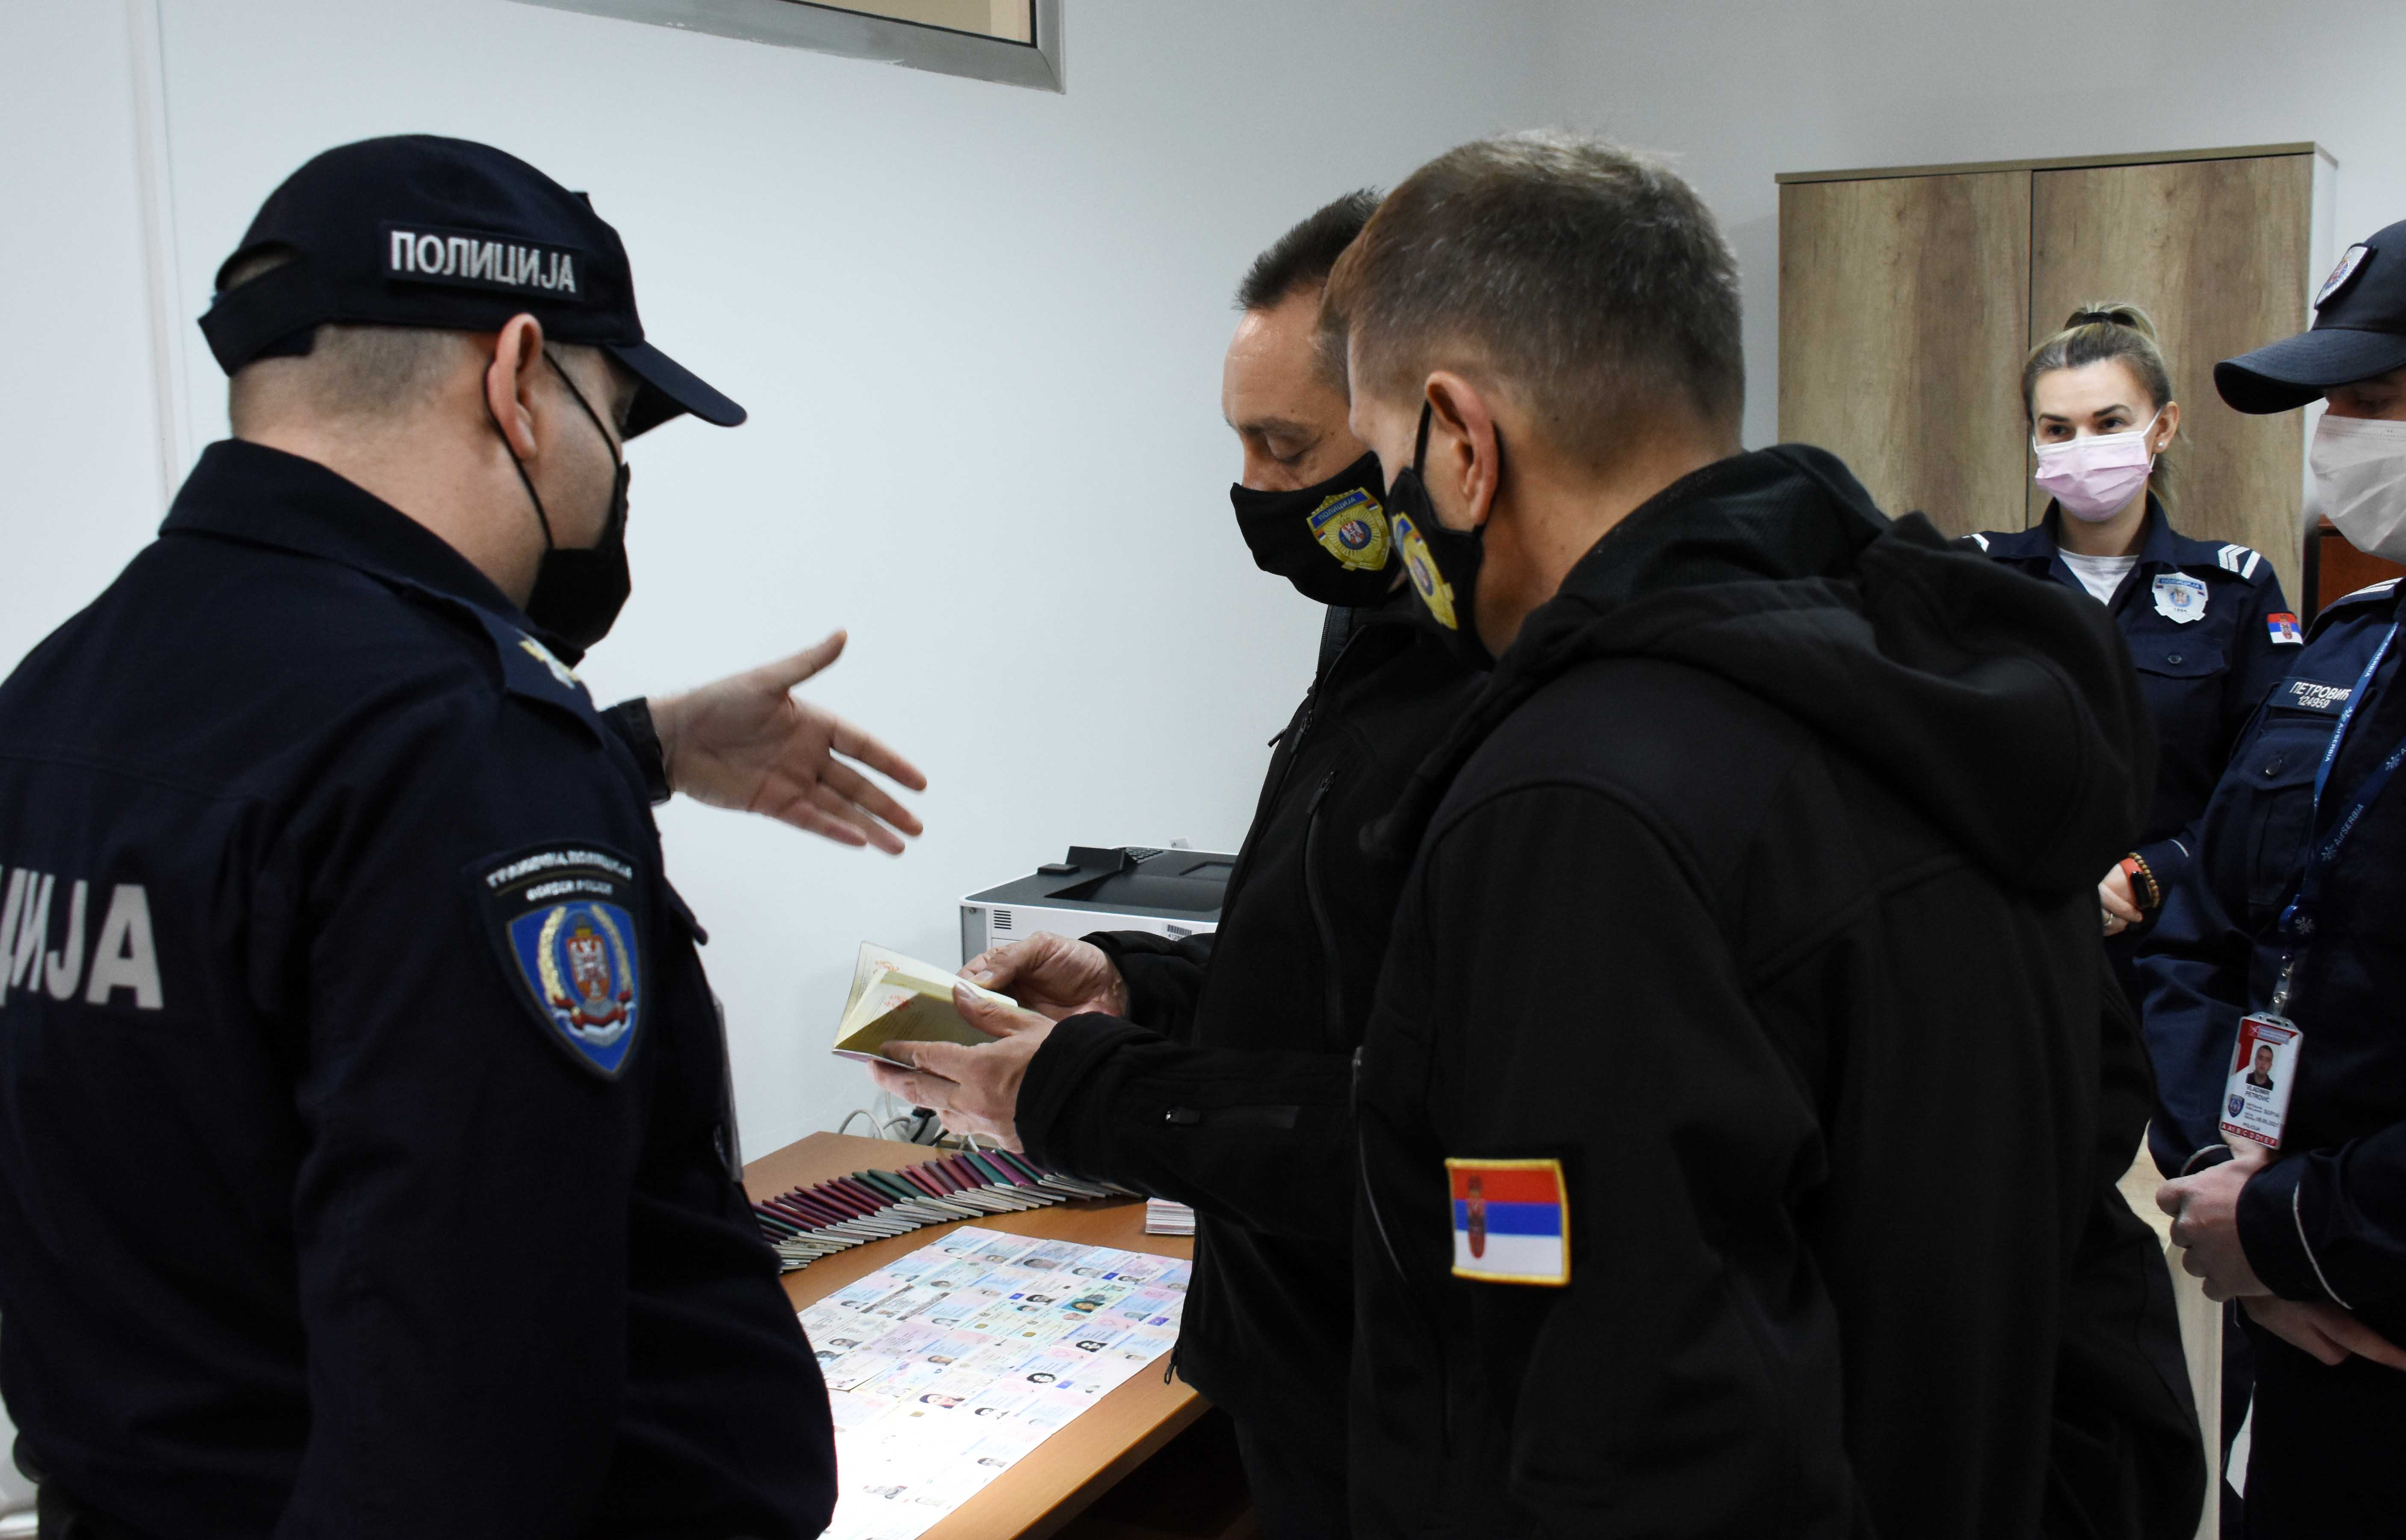 Станица граничне полиције Београд међу 10 најбољих у Европи  у откривању фалсификованих докумената